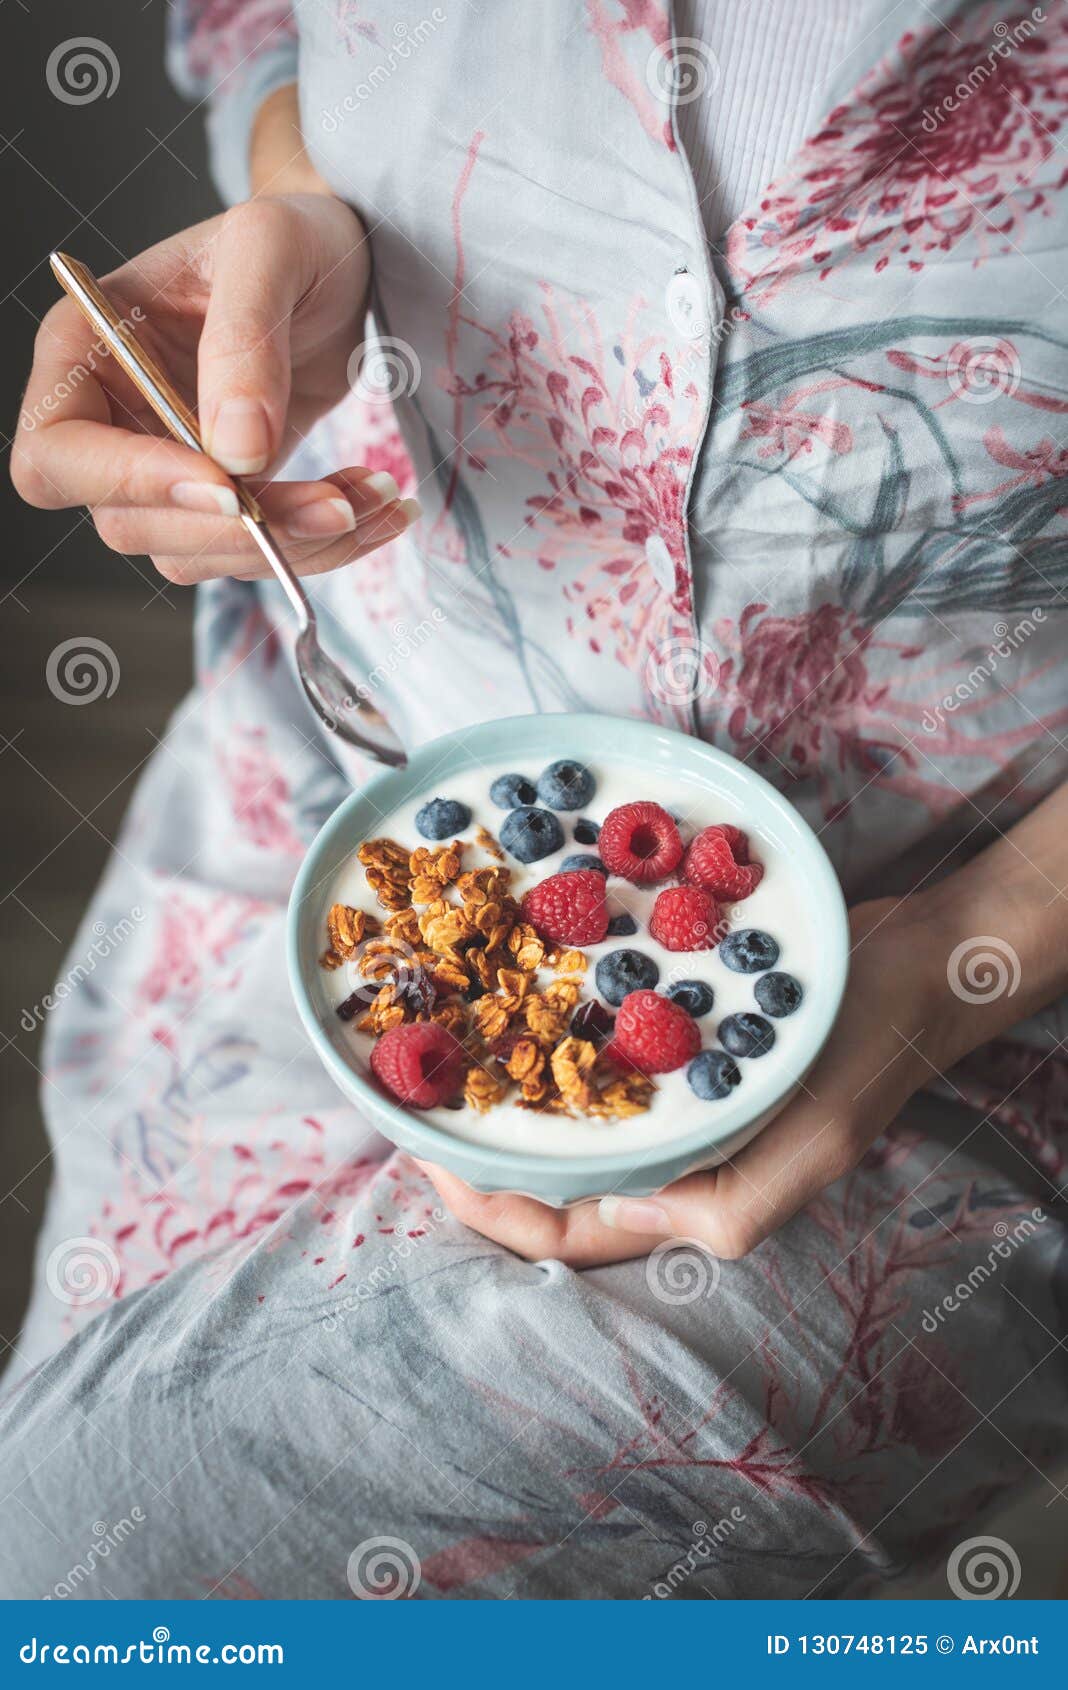 female in pijama eating yogurt with granola and berries